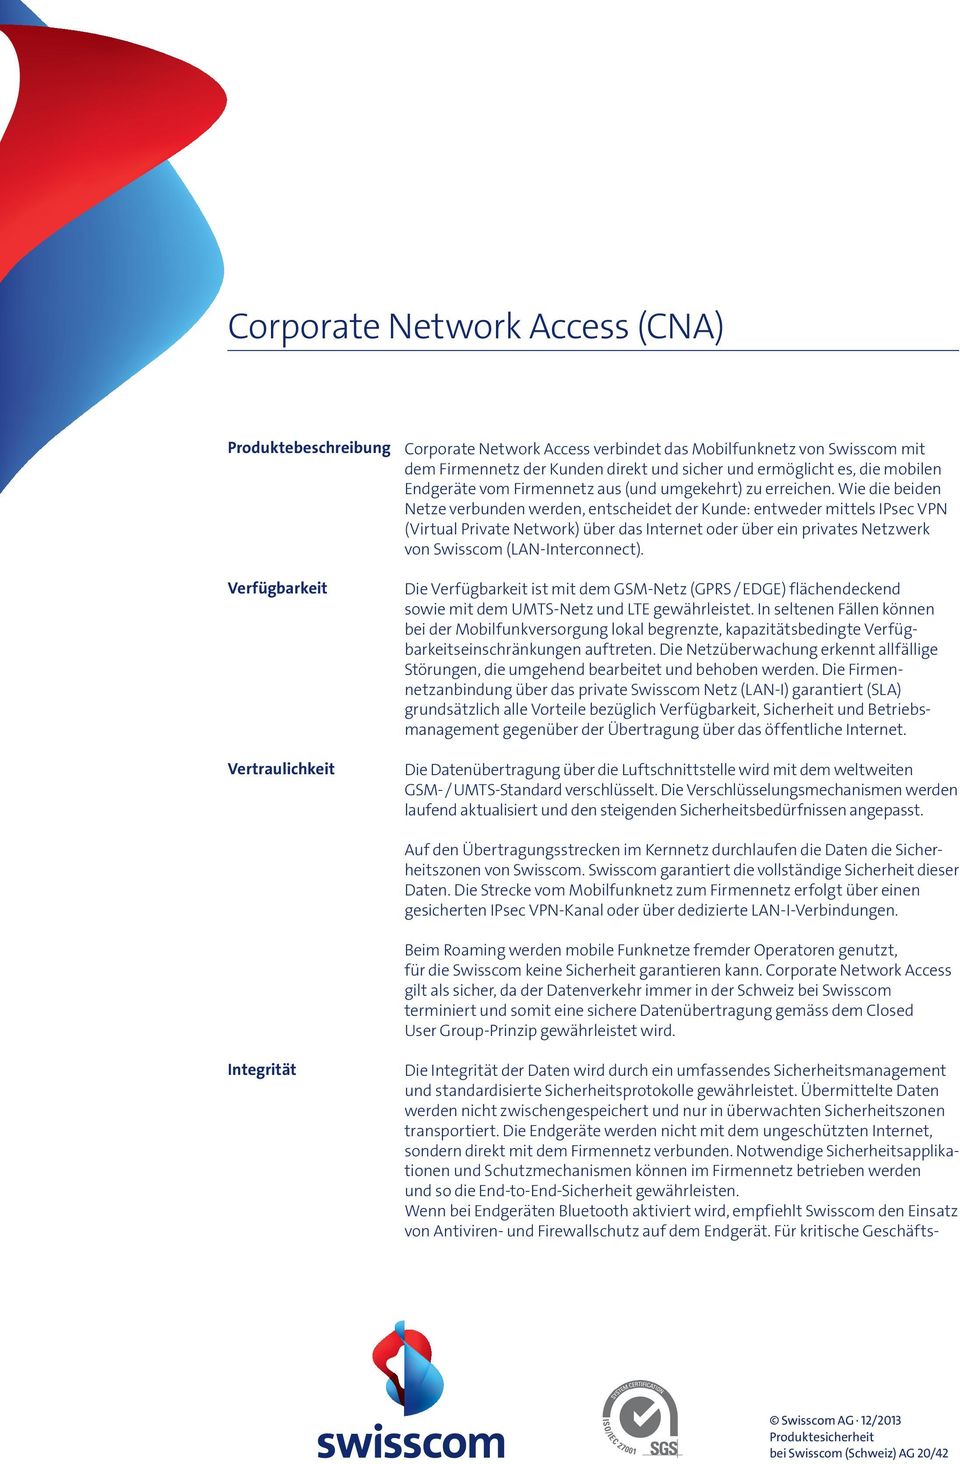 Wie die beiden Netze verbunden werden, entscheidet der Kunde: entweder mittels IPsec VPN (Virtual Private Network) über das Internet oder über ein privates Netzwerk von Swisscom (LAN-Interconnect).